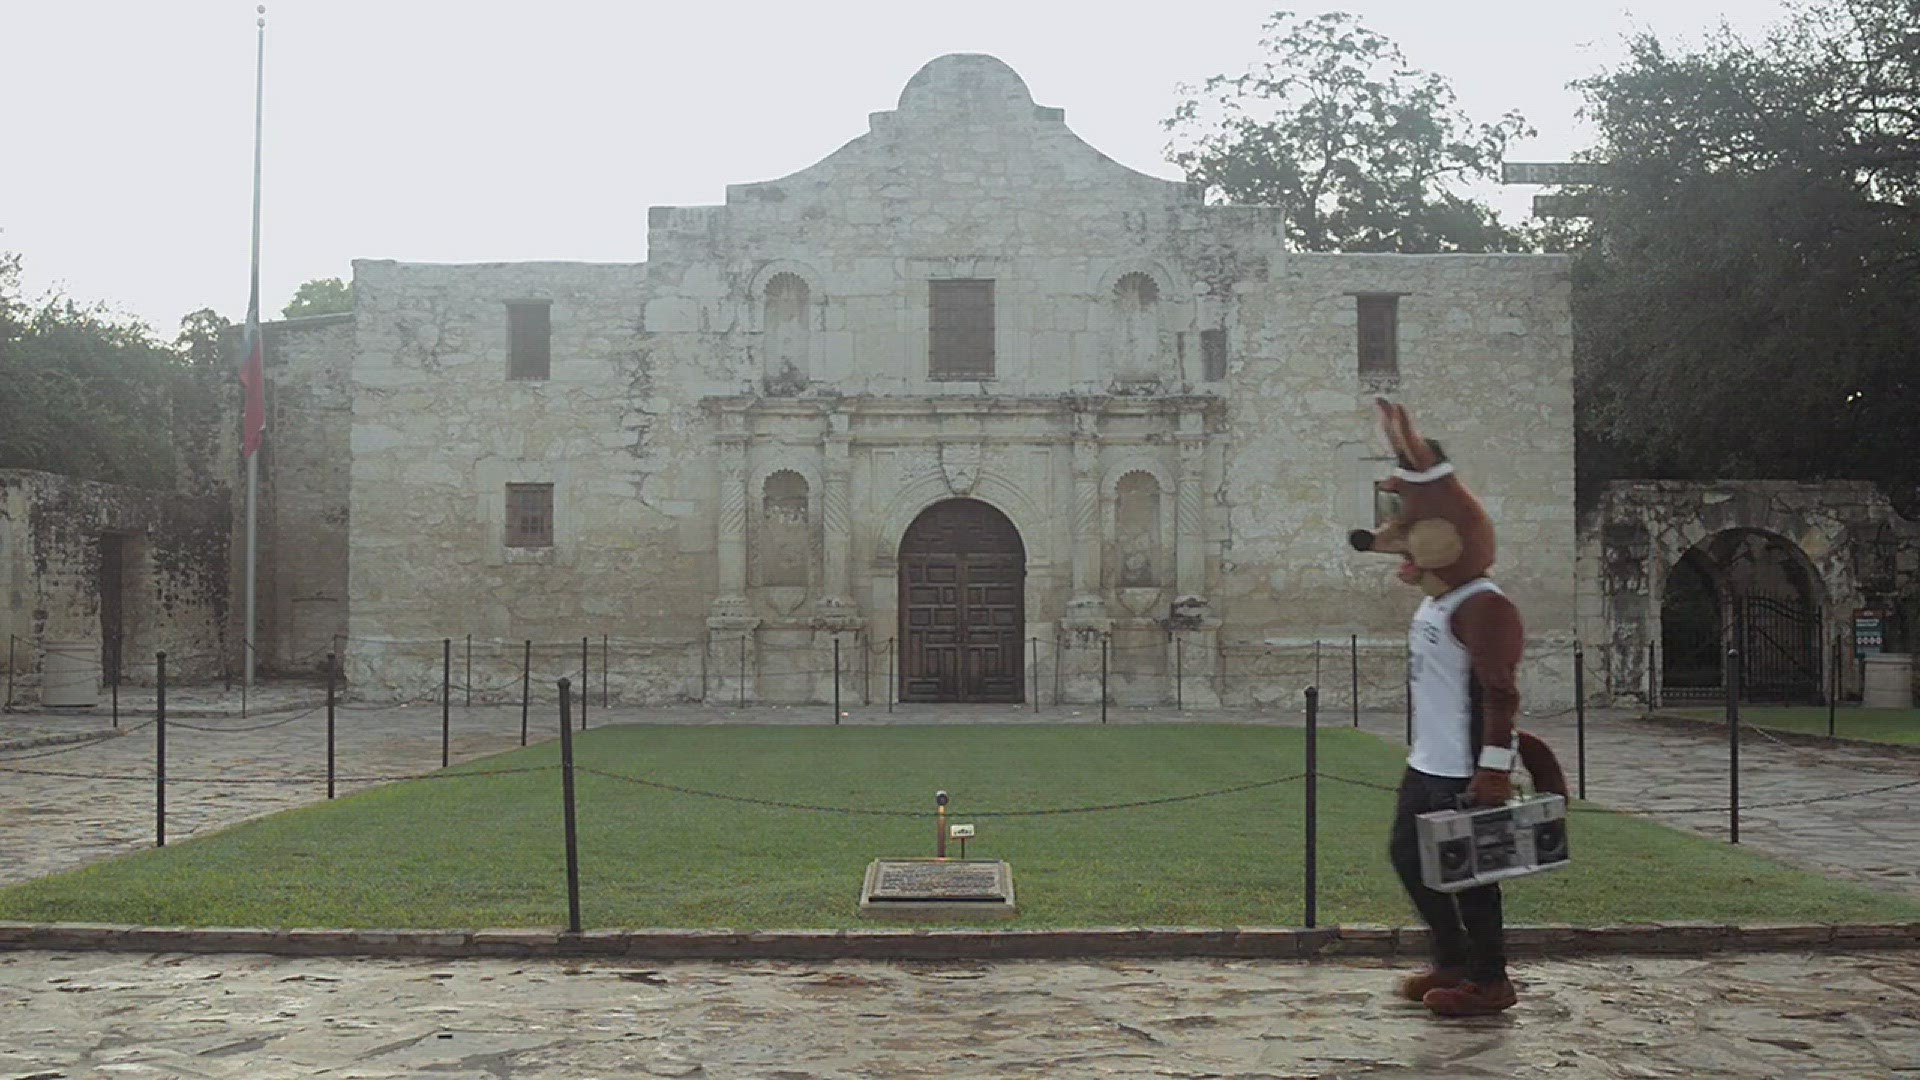 Spurs from KENS5 in San Antonio, San Antonio, TX